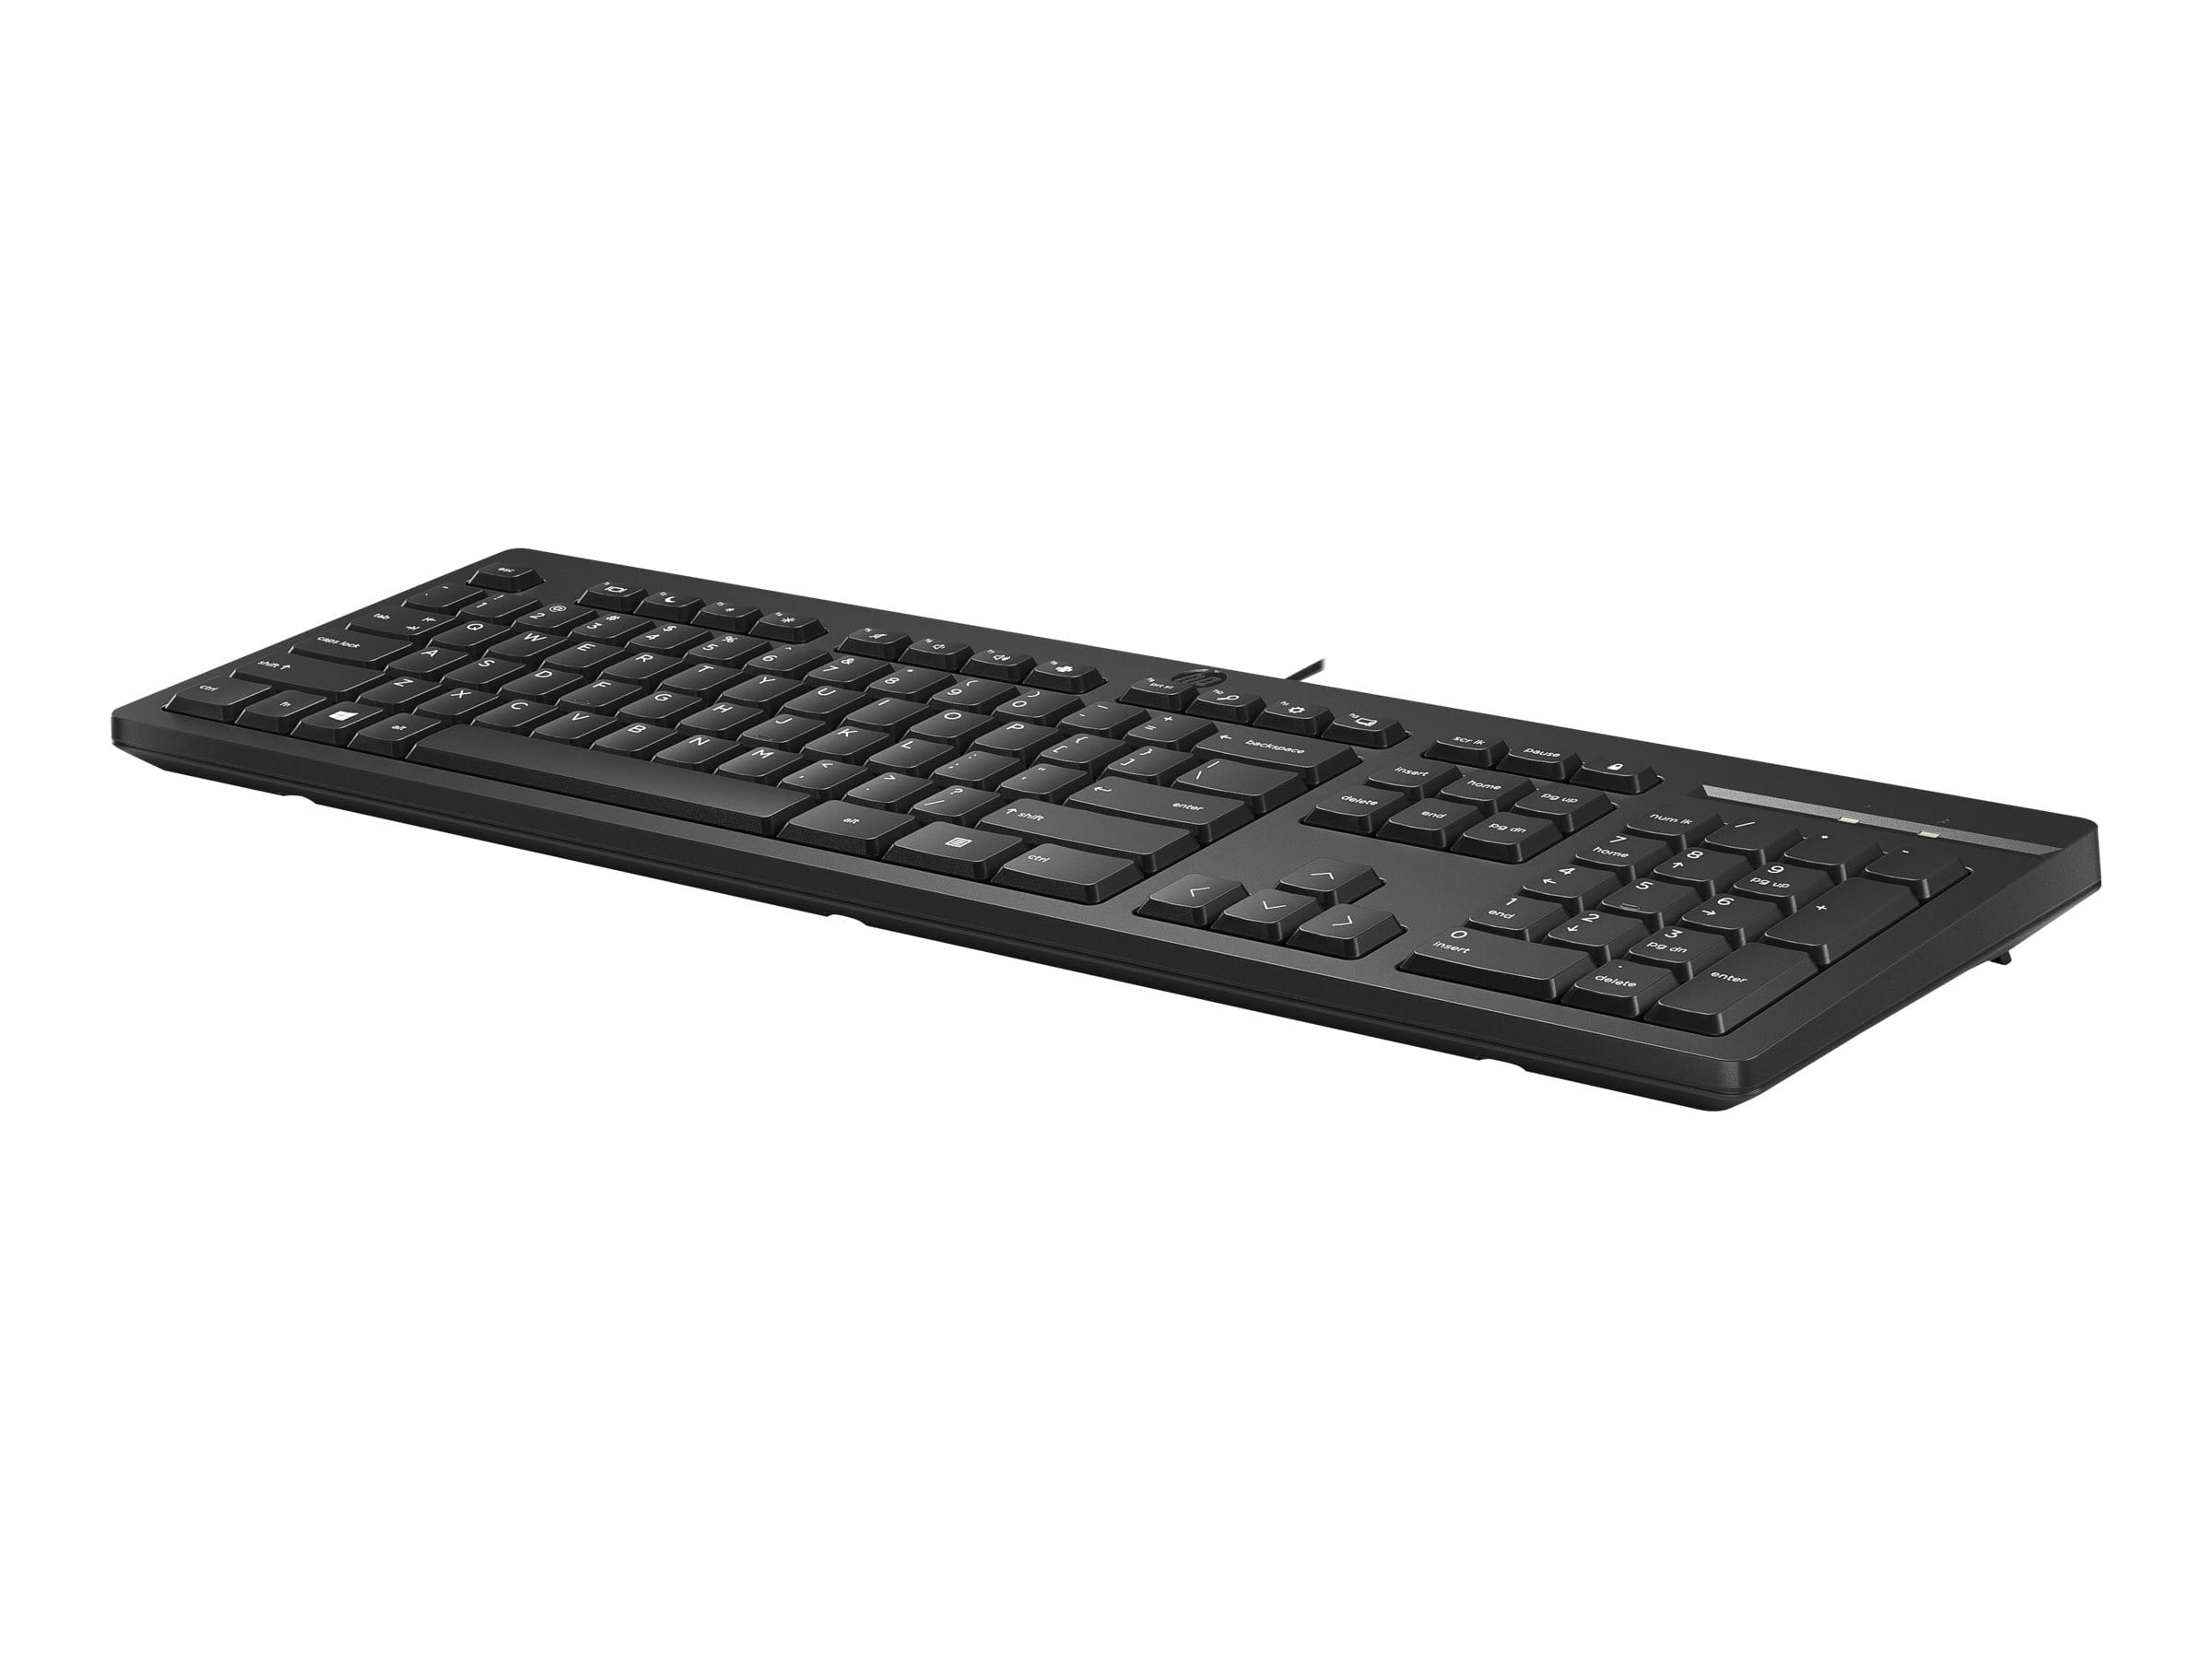 HP 125 - Tastatur - USB - Bosnisch/Kroatisch/Montenegrinisch/Slowenisch/Serbisch